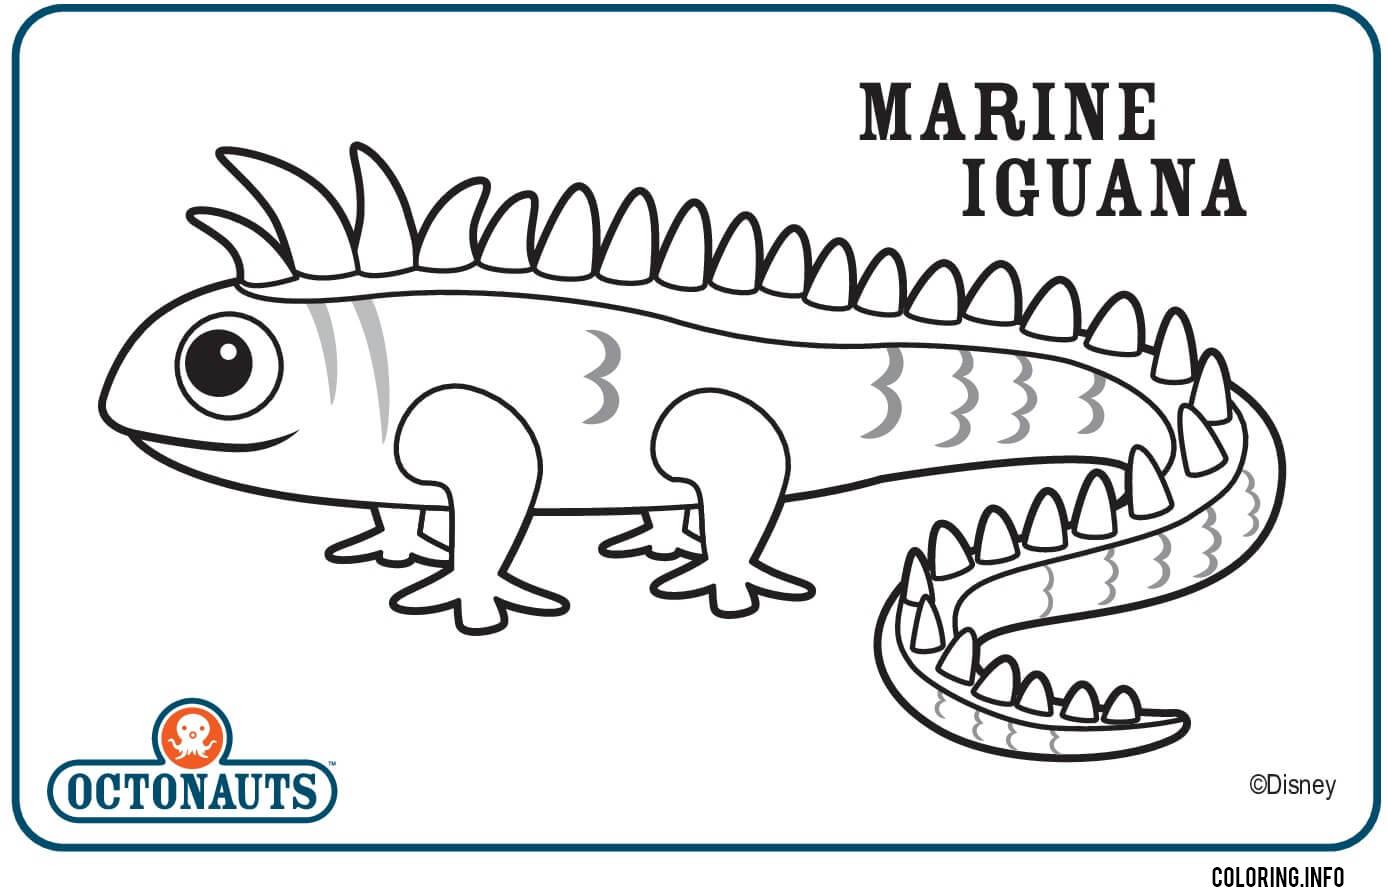 Marine Iguana Octonaut Creature coloring